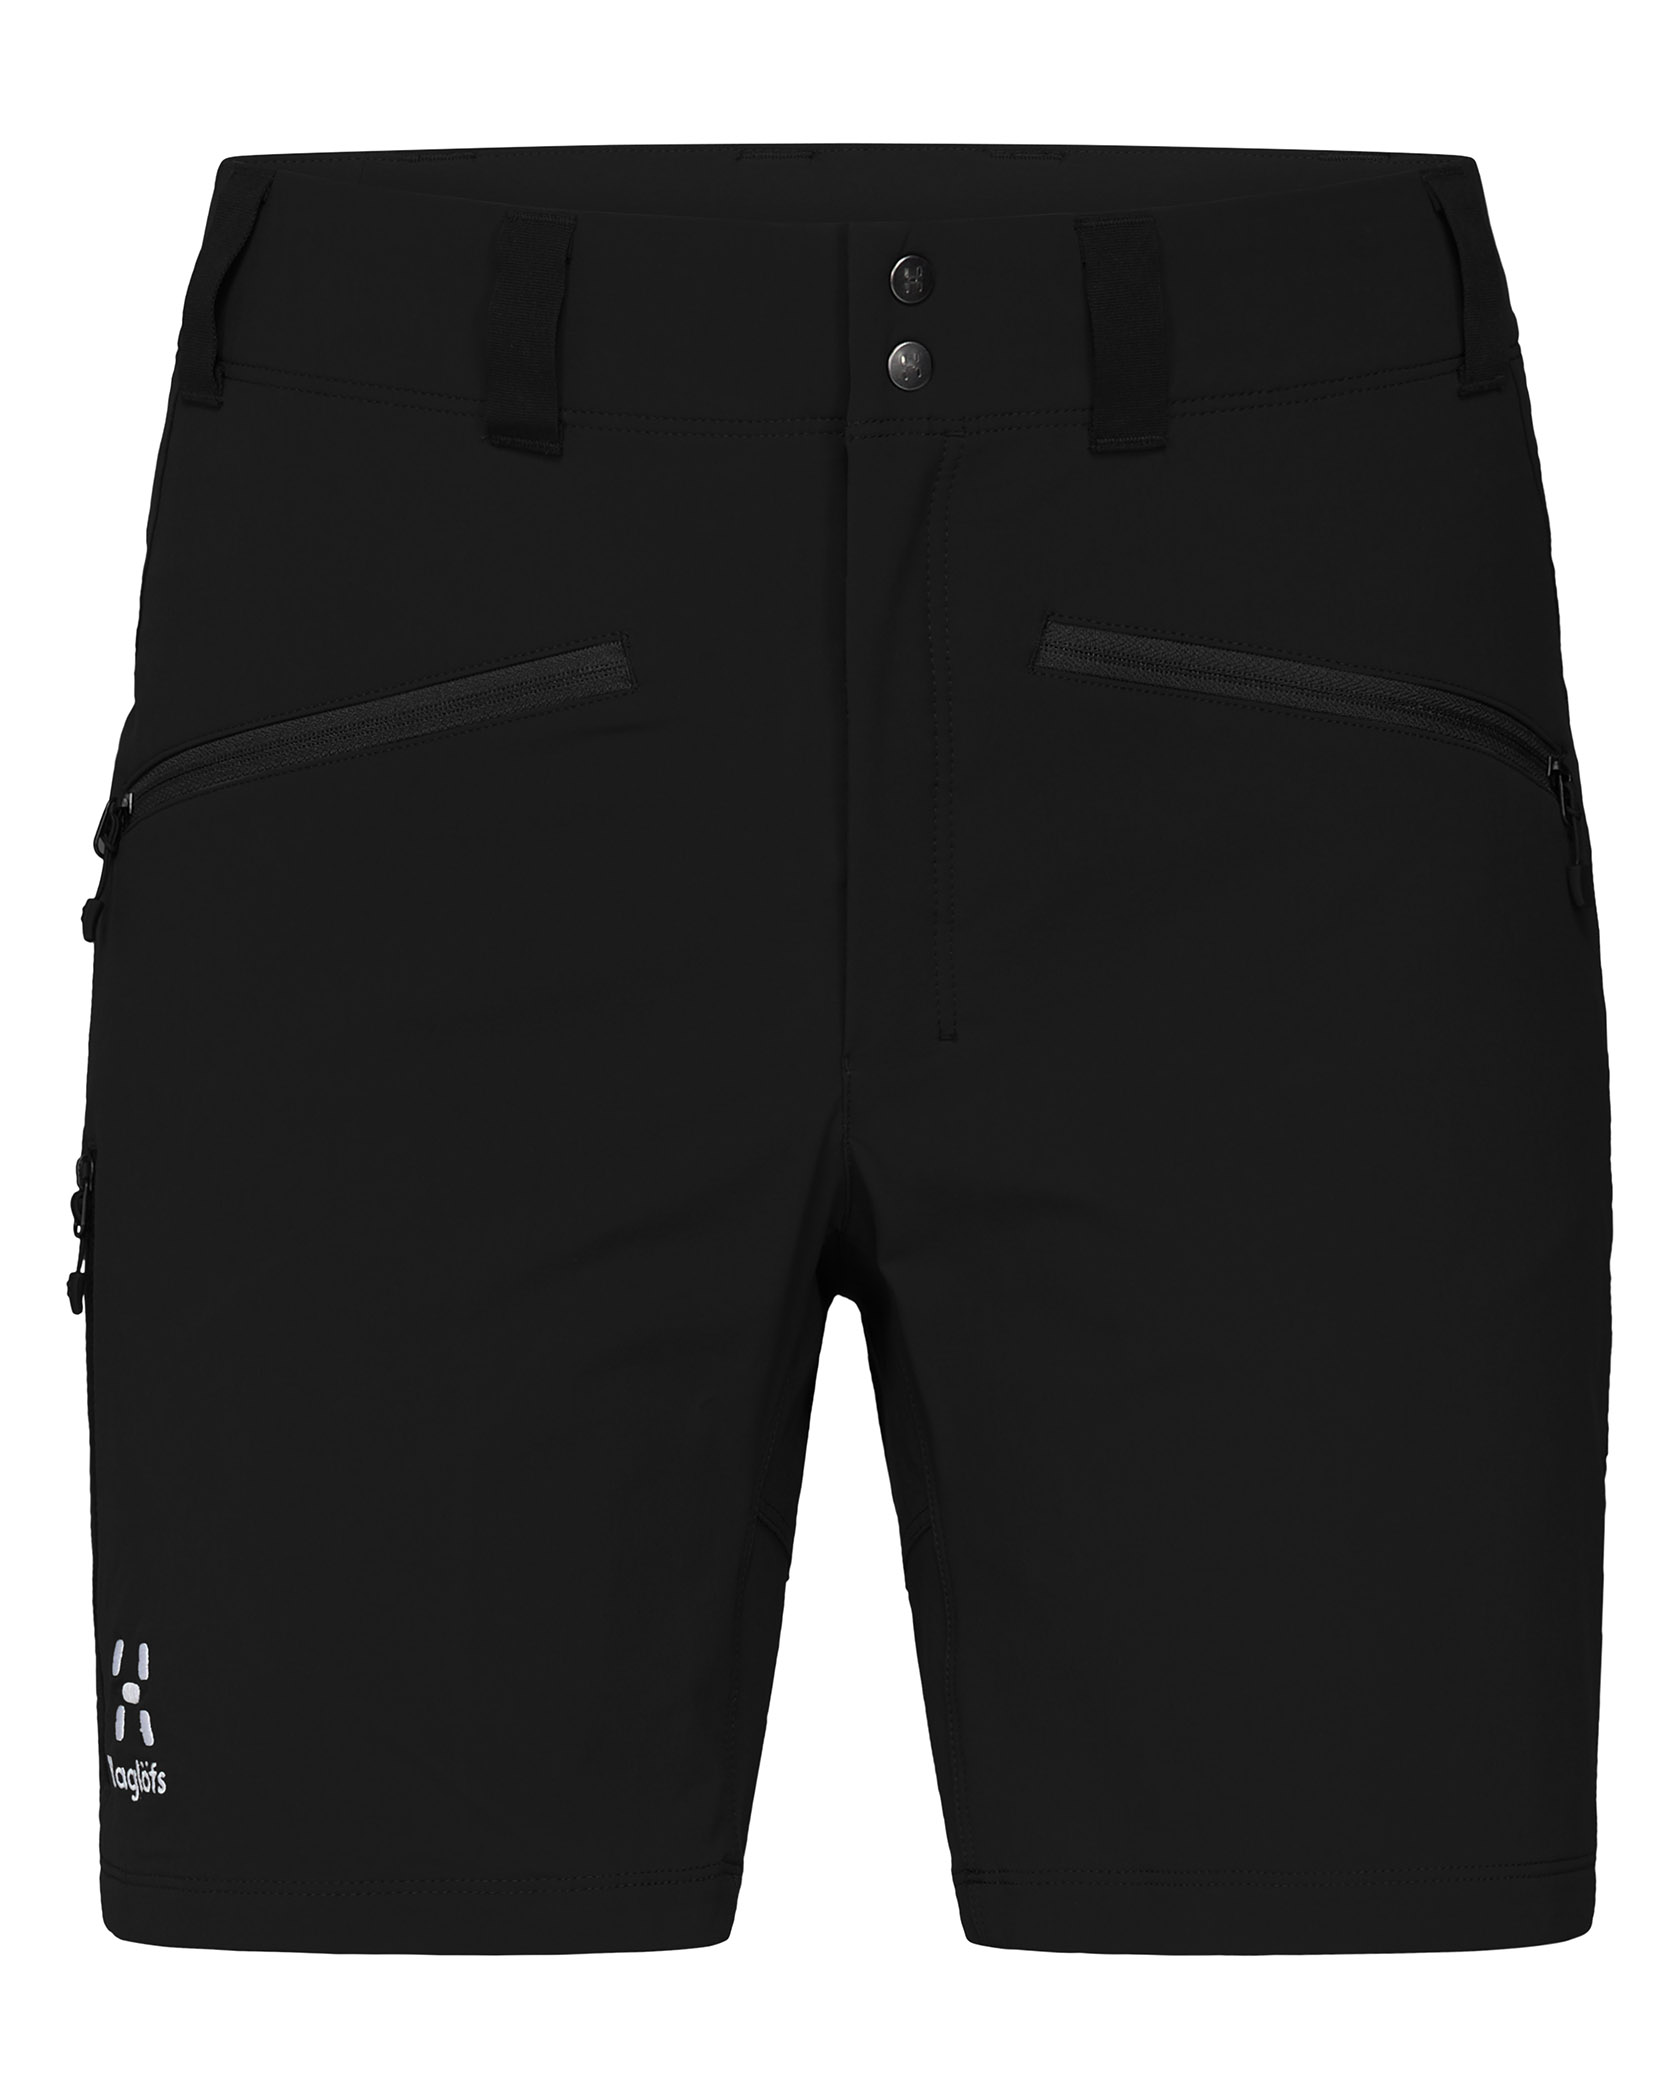 Haglöfs Mid Standard Shorts W True Black (Storlek 44)